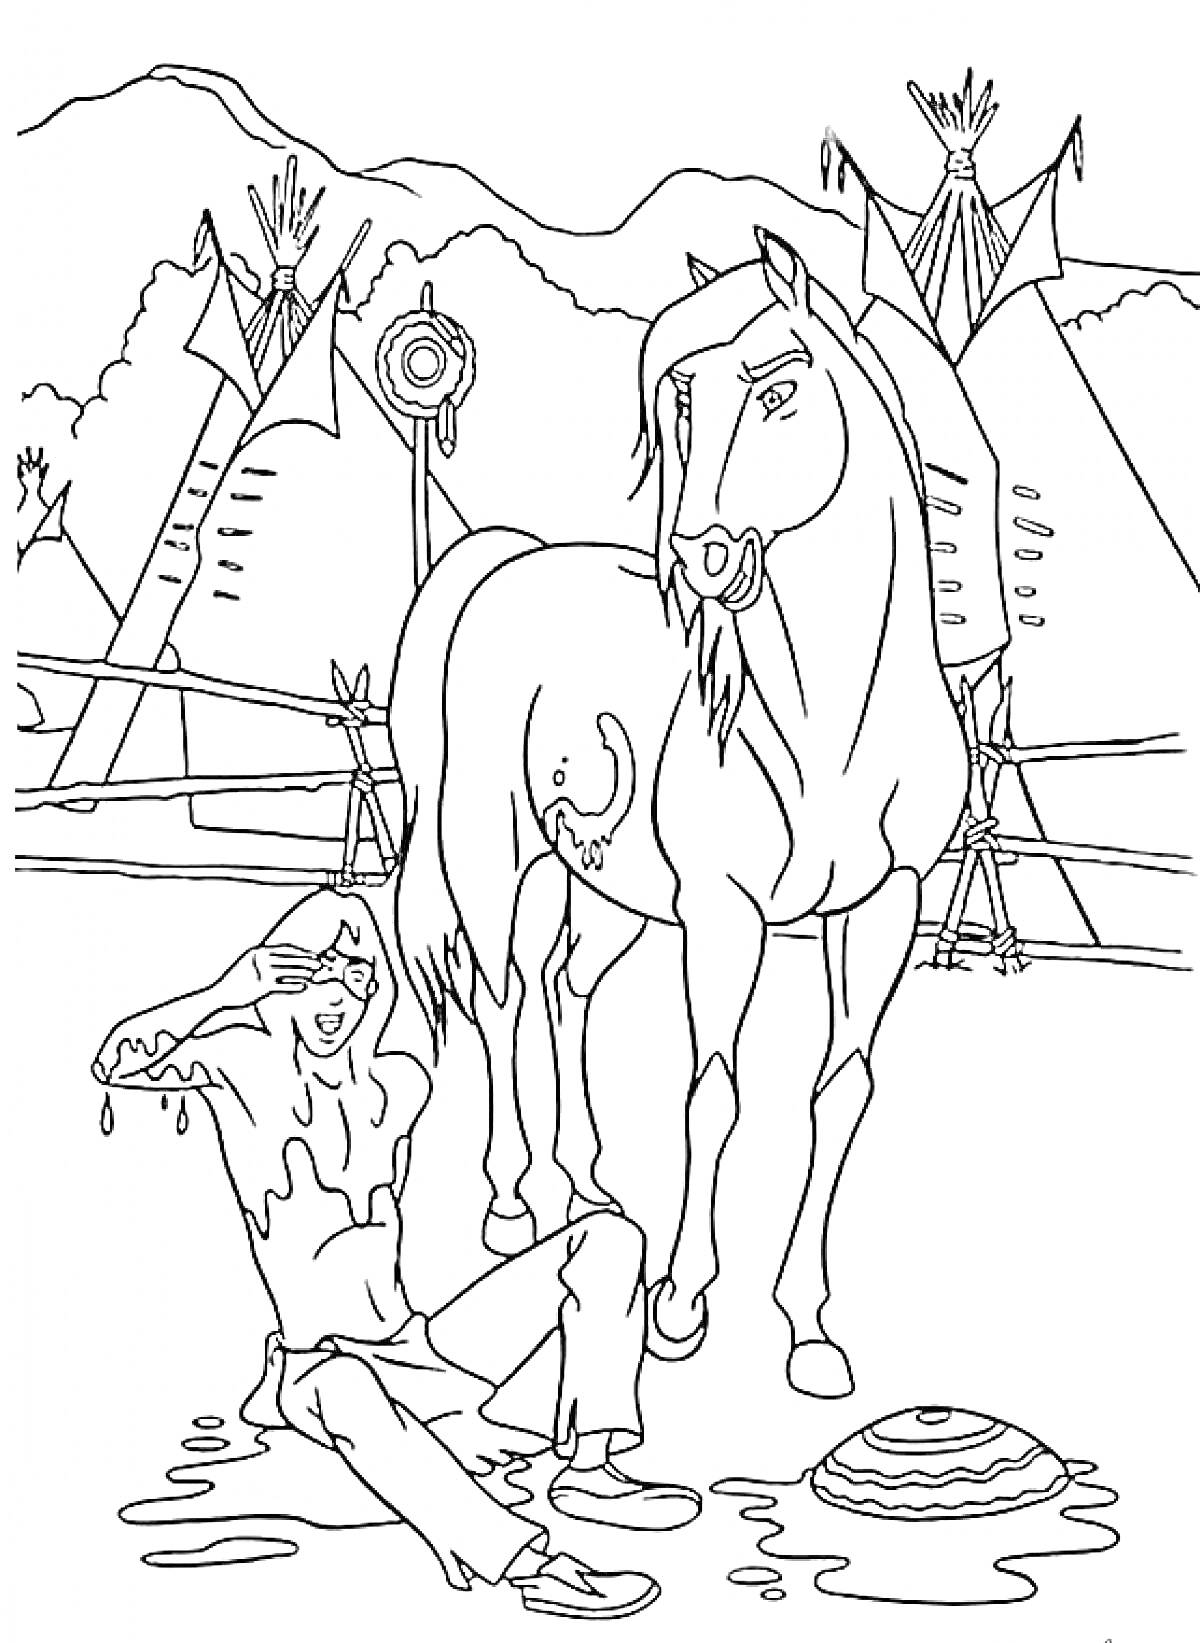 Человек, подстриженный конь, вигвамы, горы, забор, лужи